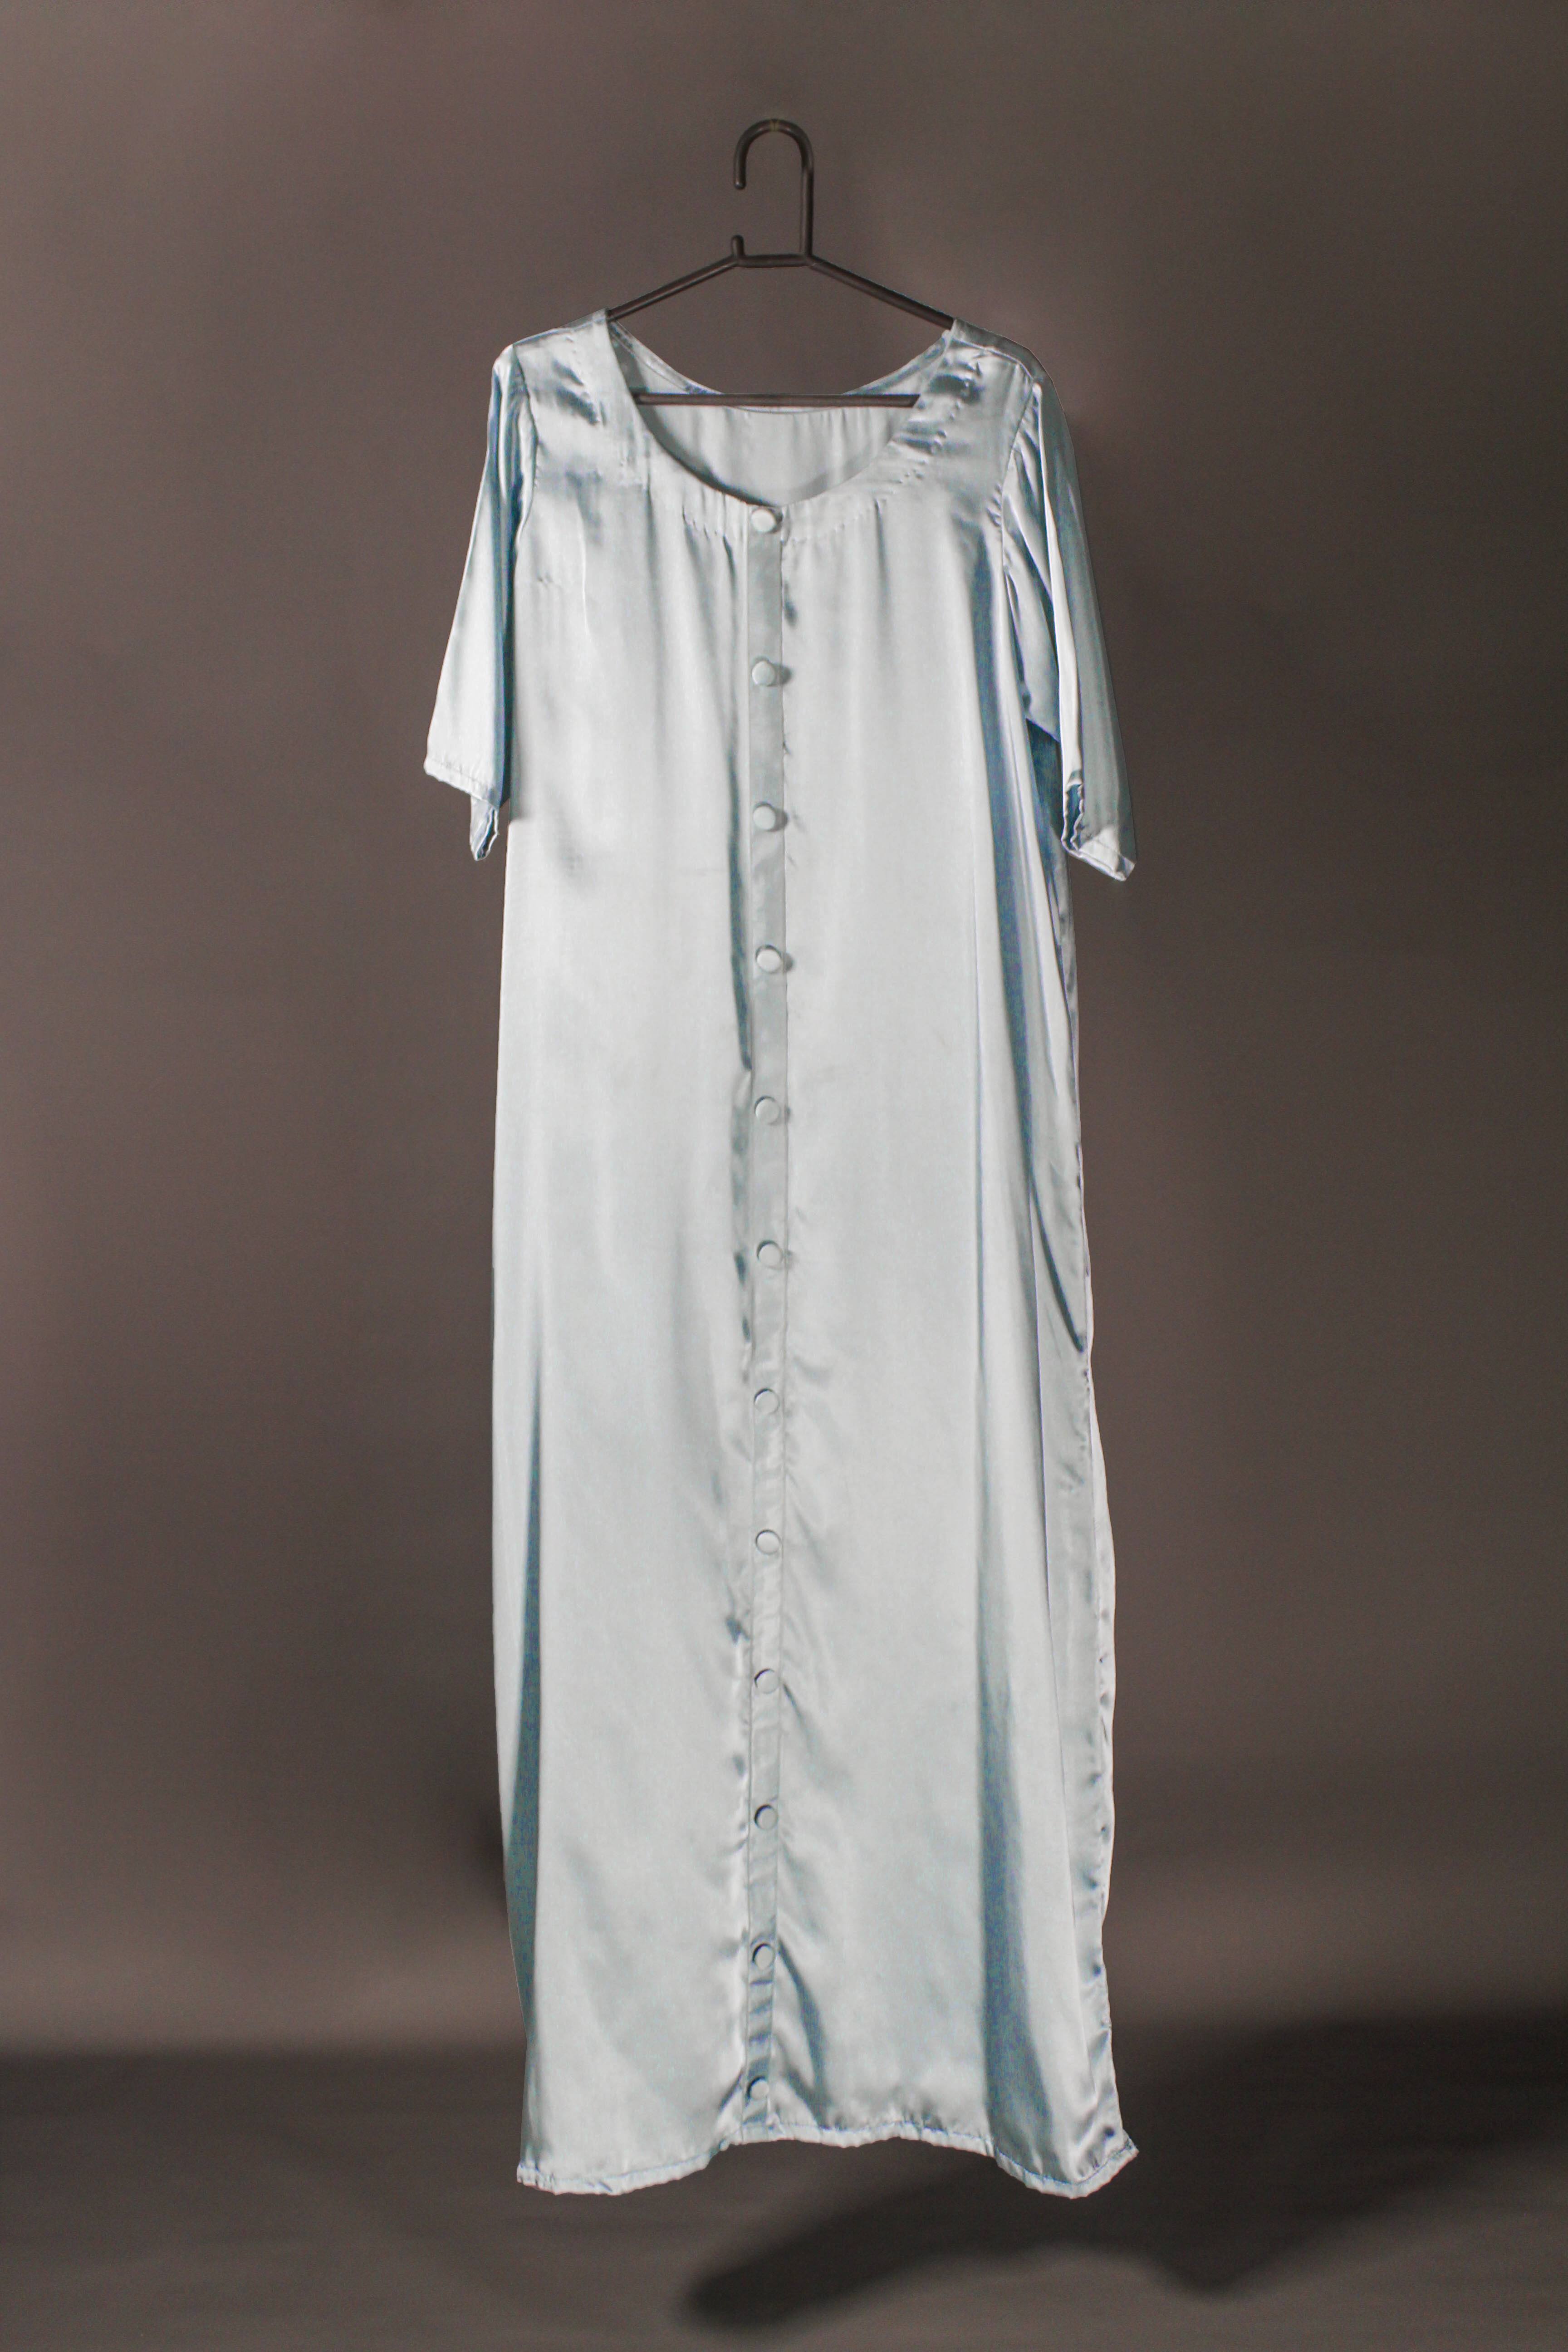 Gossamer Blue Dream: Satin Inner Slip Dress in Baby Blue